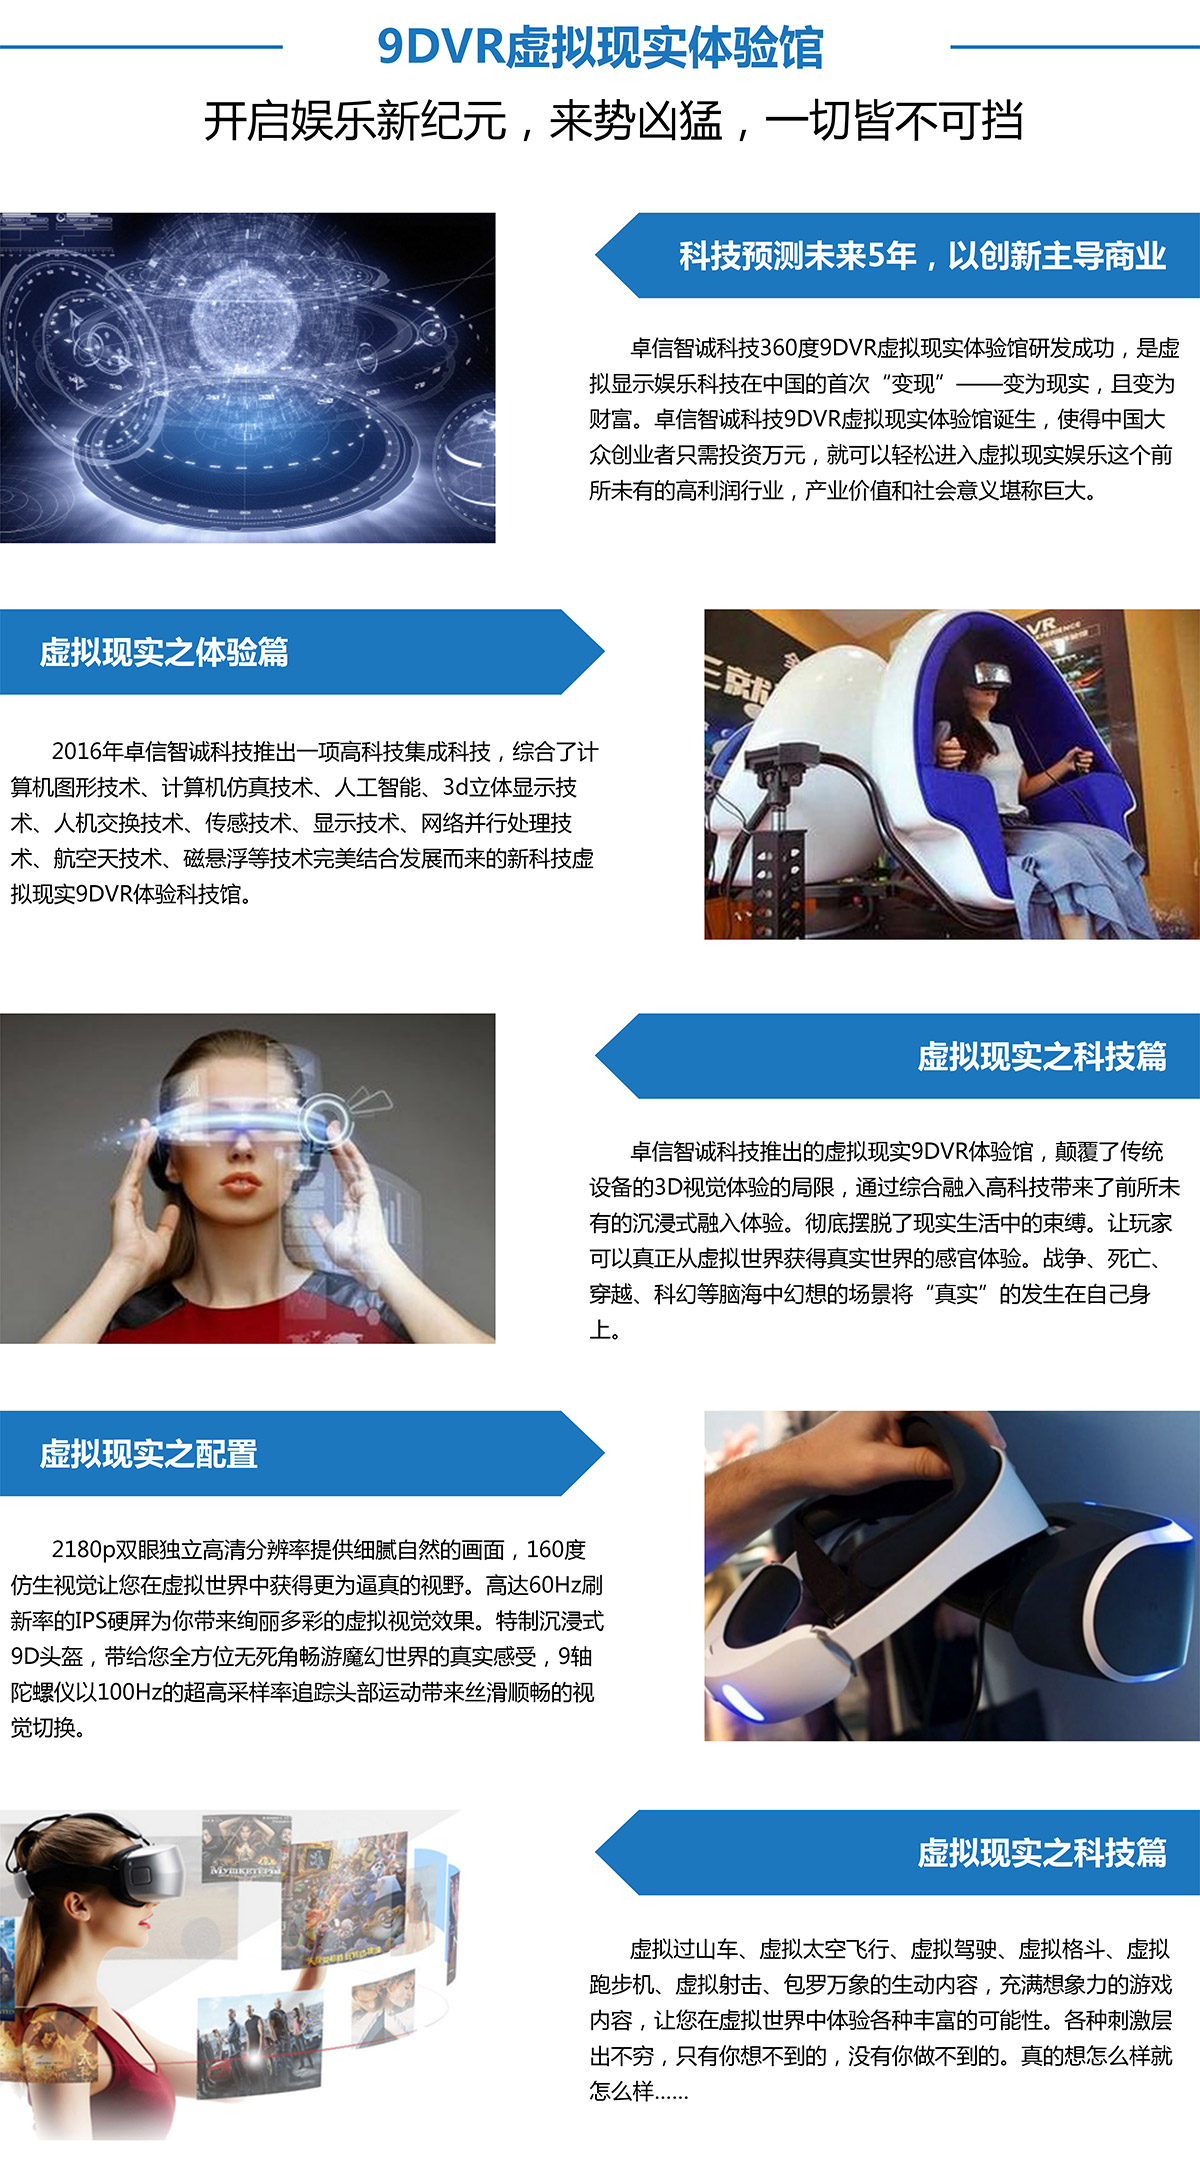 云南卓信智诚9DVR虚拟现实体验馆全球上市.jpg